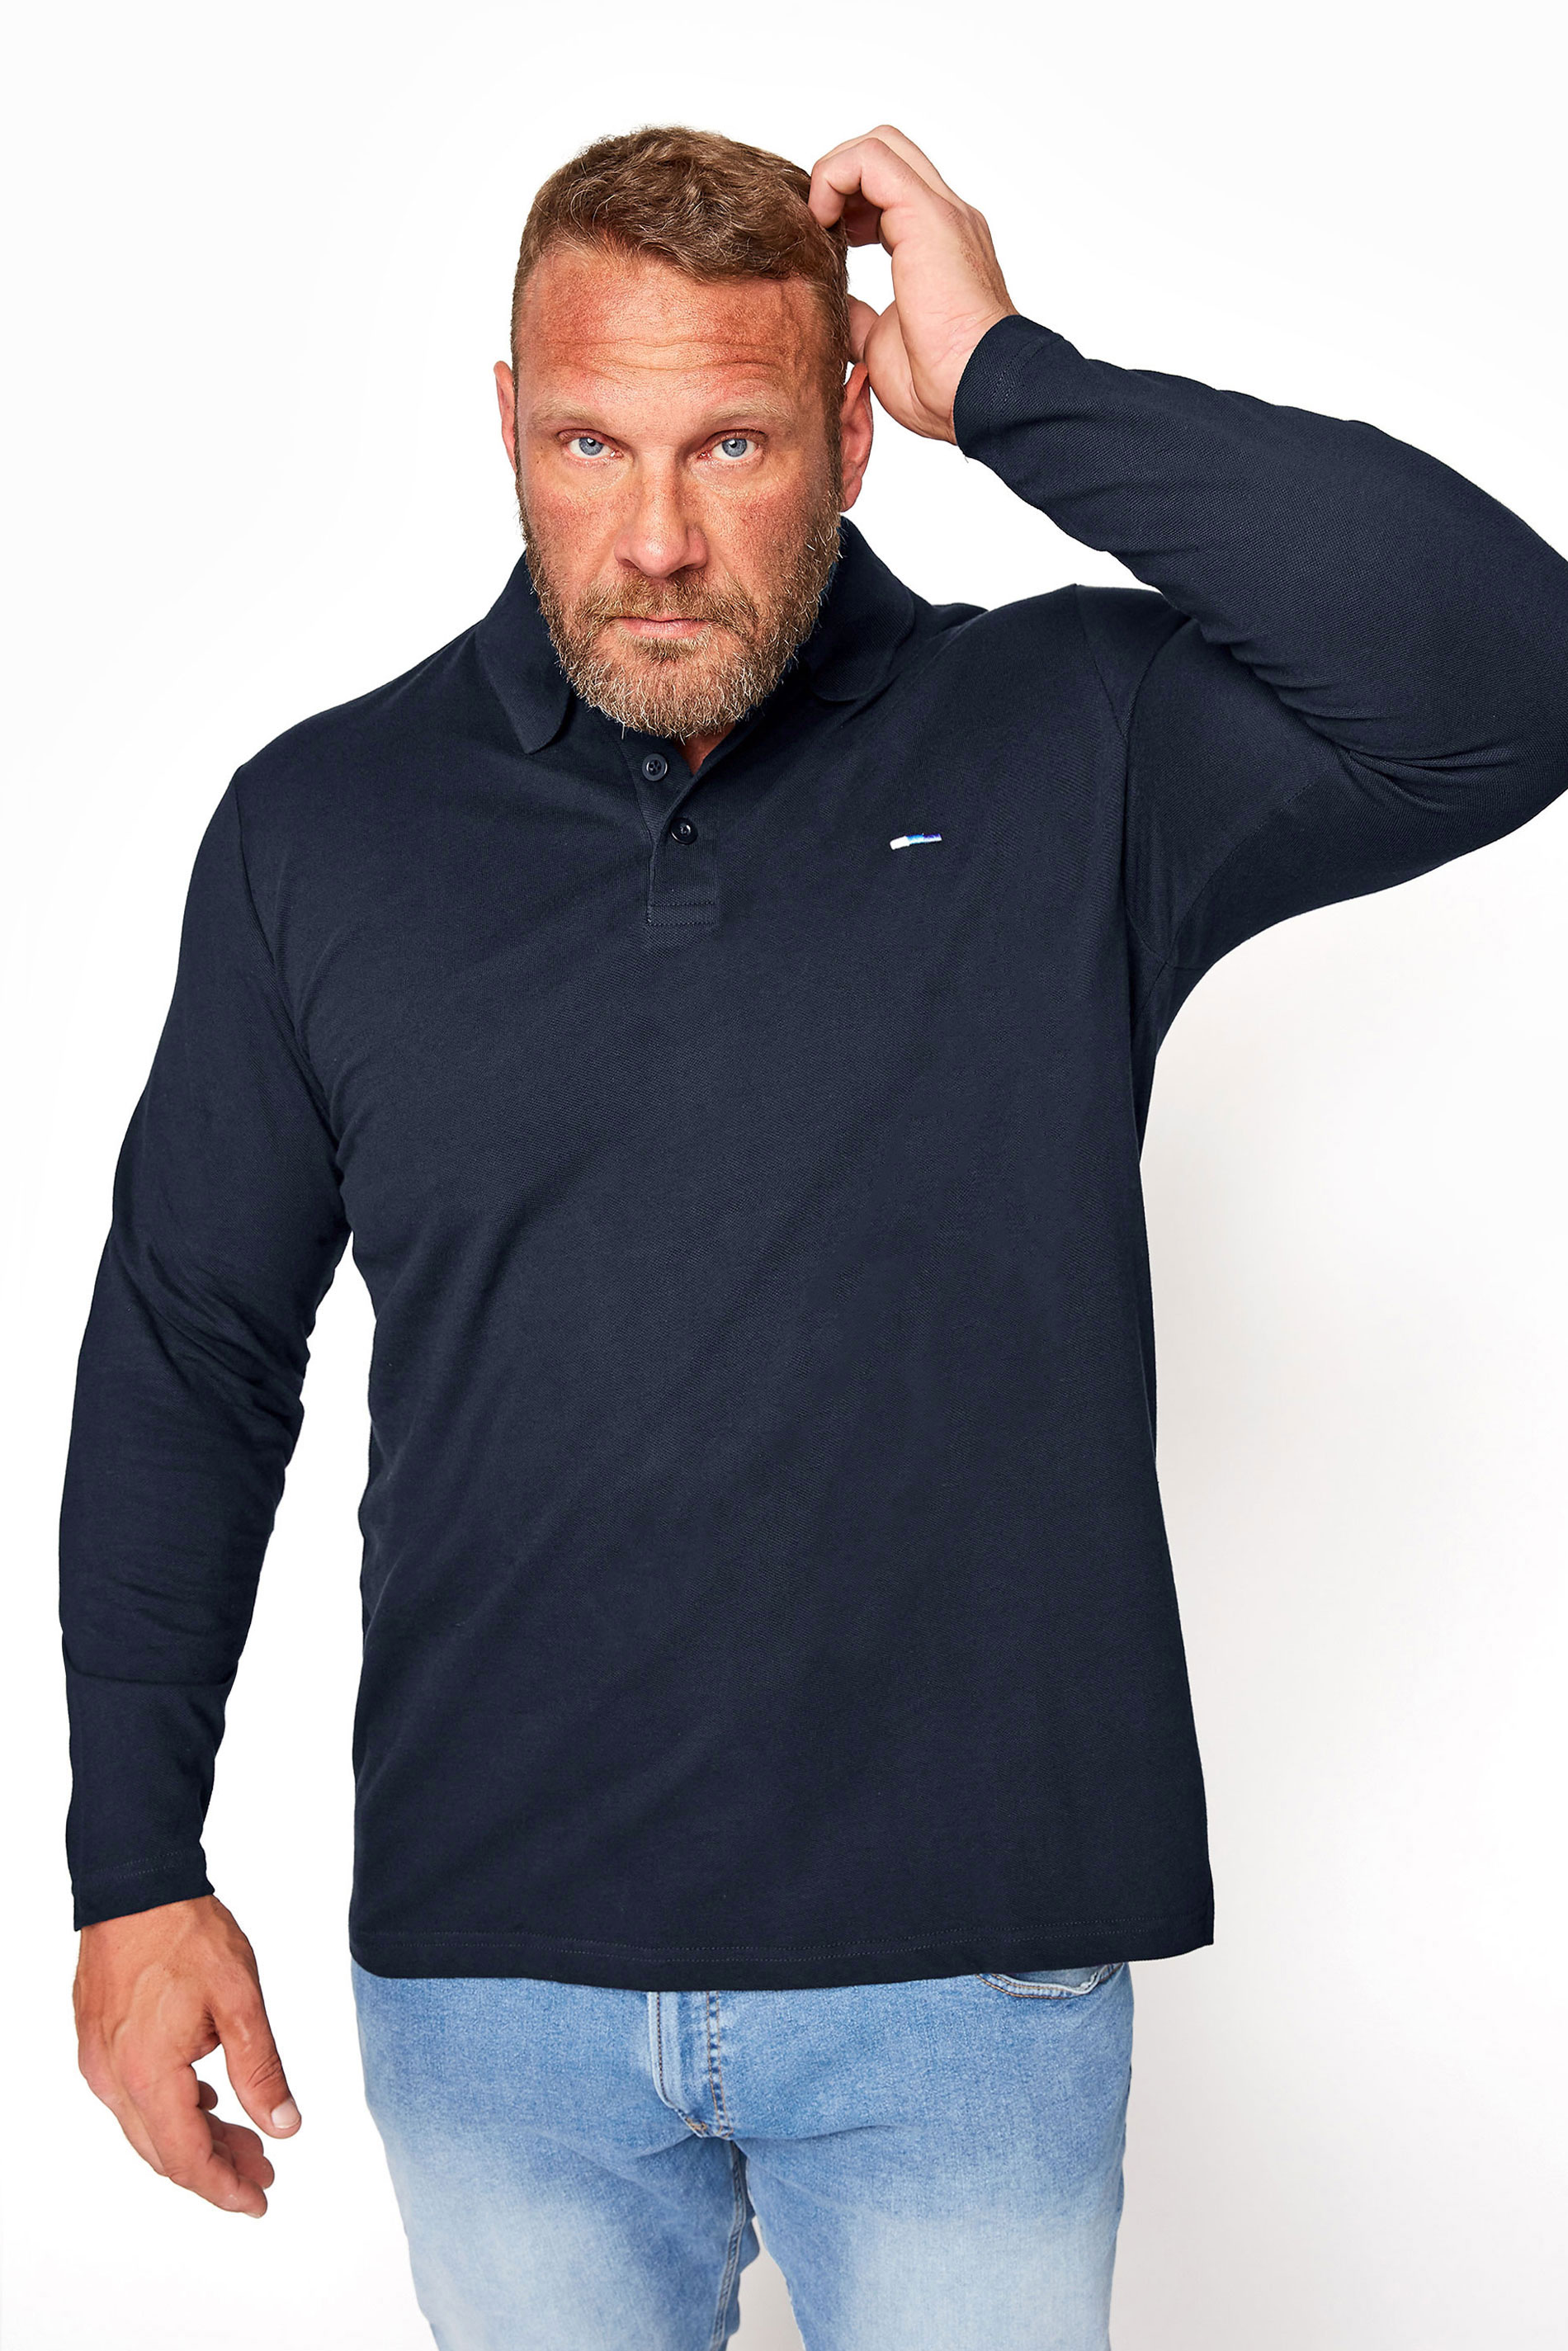 BadRhino Navy Blue Essential Long Sleeve Polo Shirt | BadRhino 1